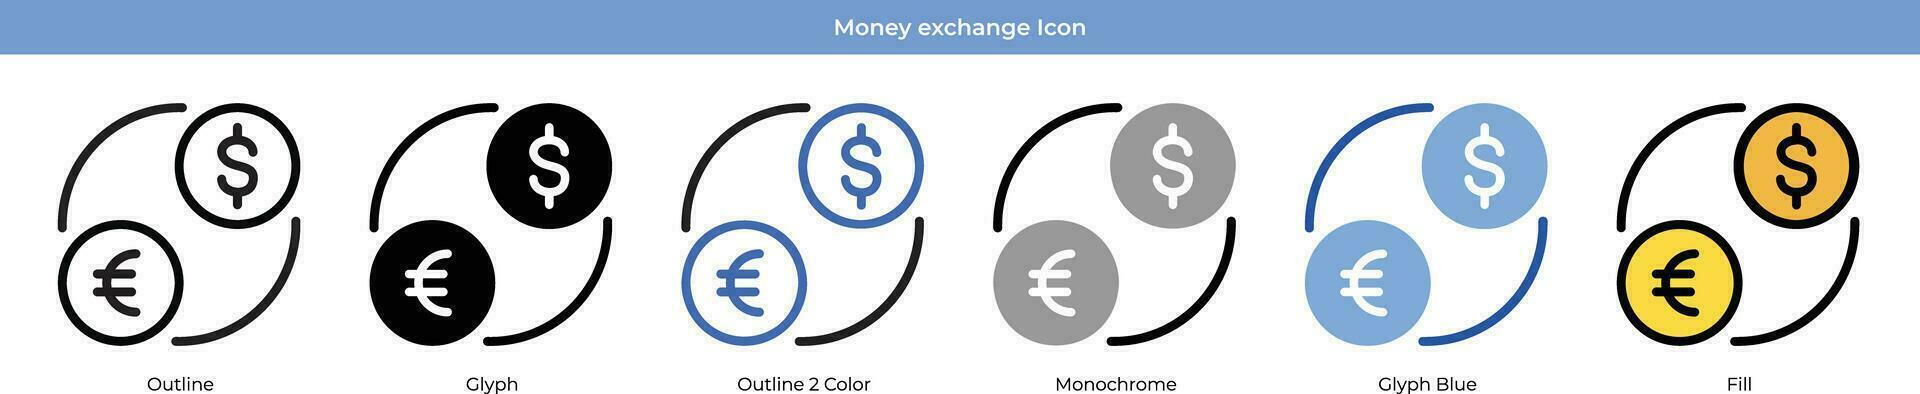 Geld Austausch Symbol einstellen vektor